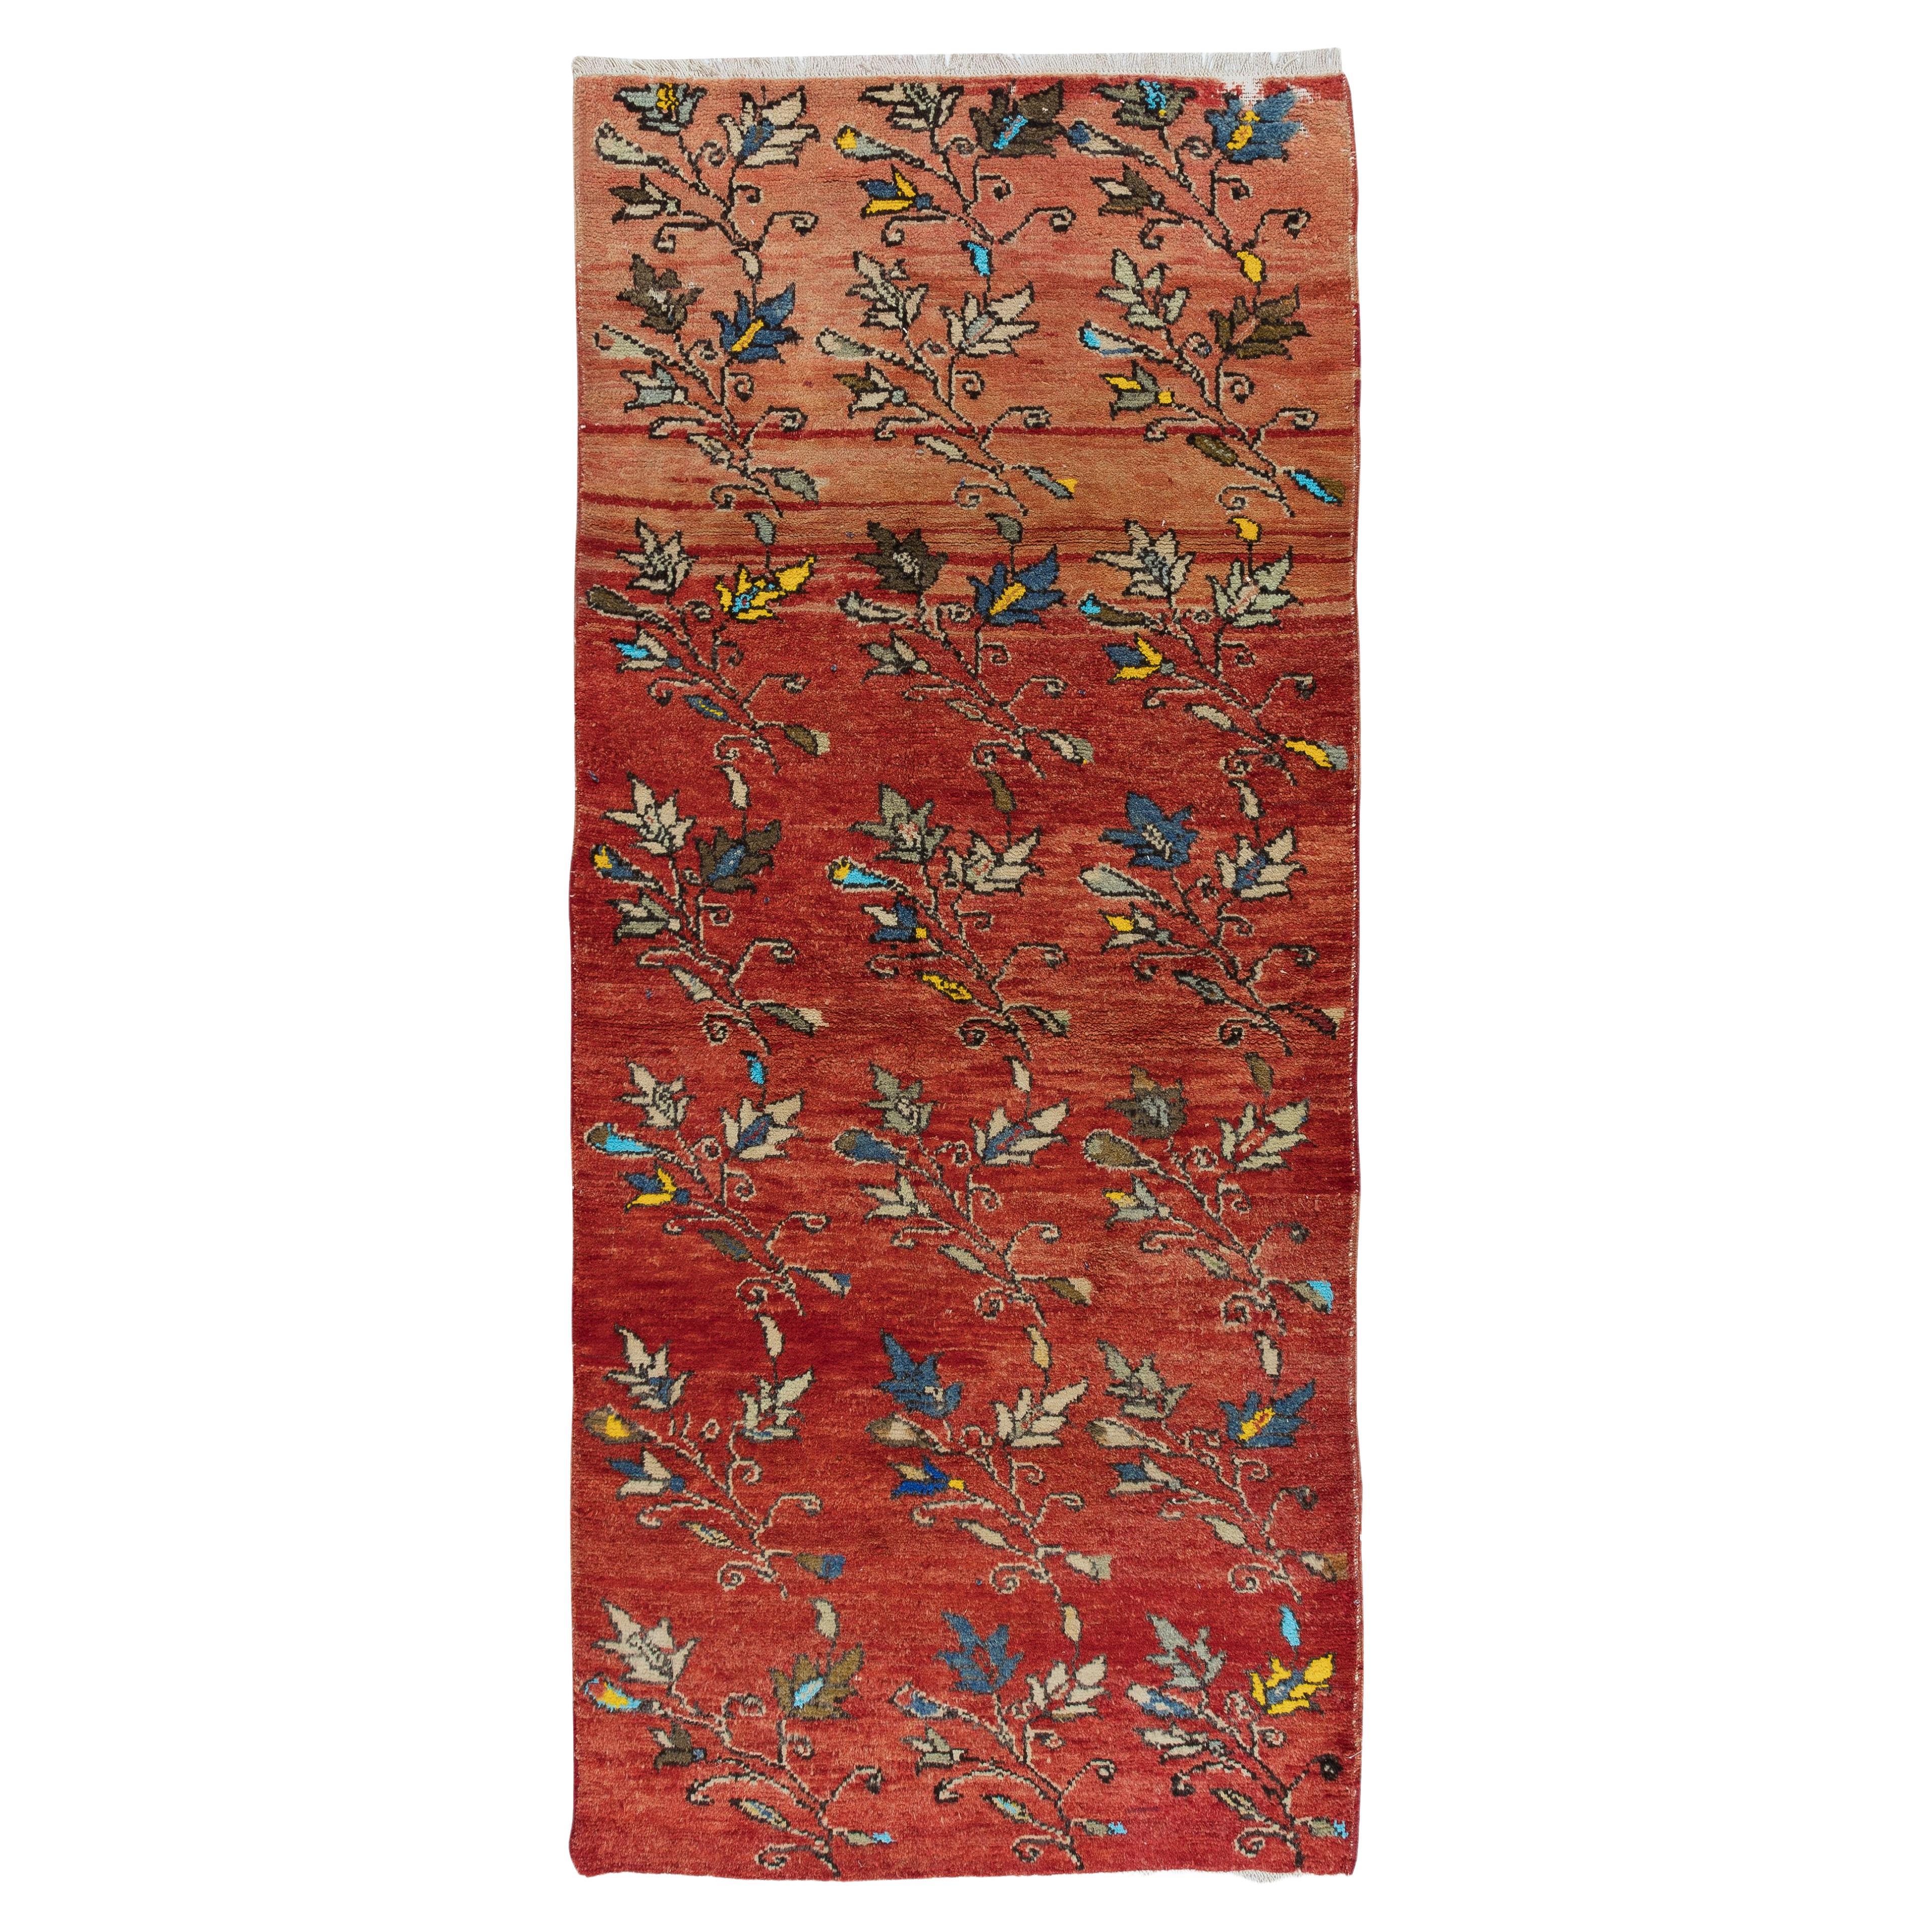 3.3x7 Ft handgemachte Vintage türkischen Läufer Teppich mit bunten Blumen für Flur